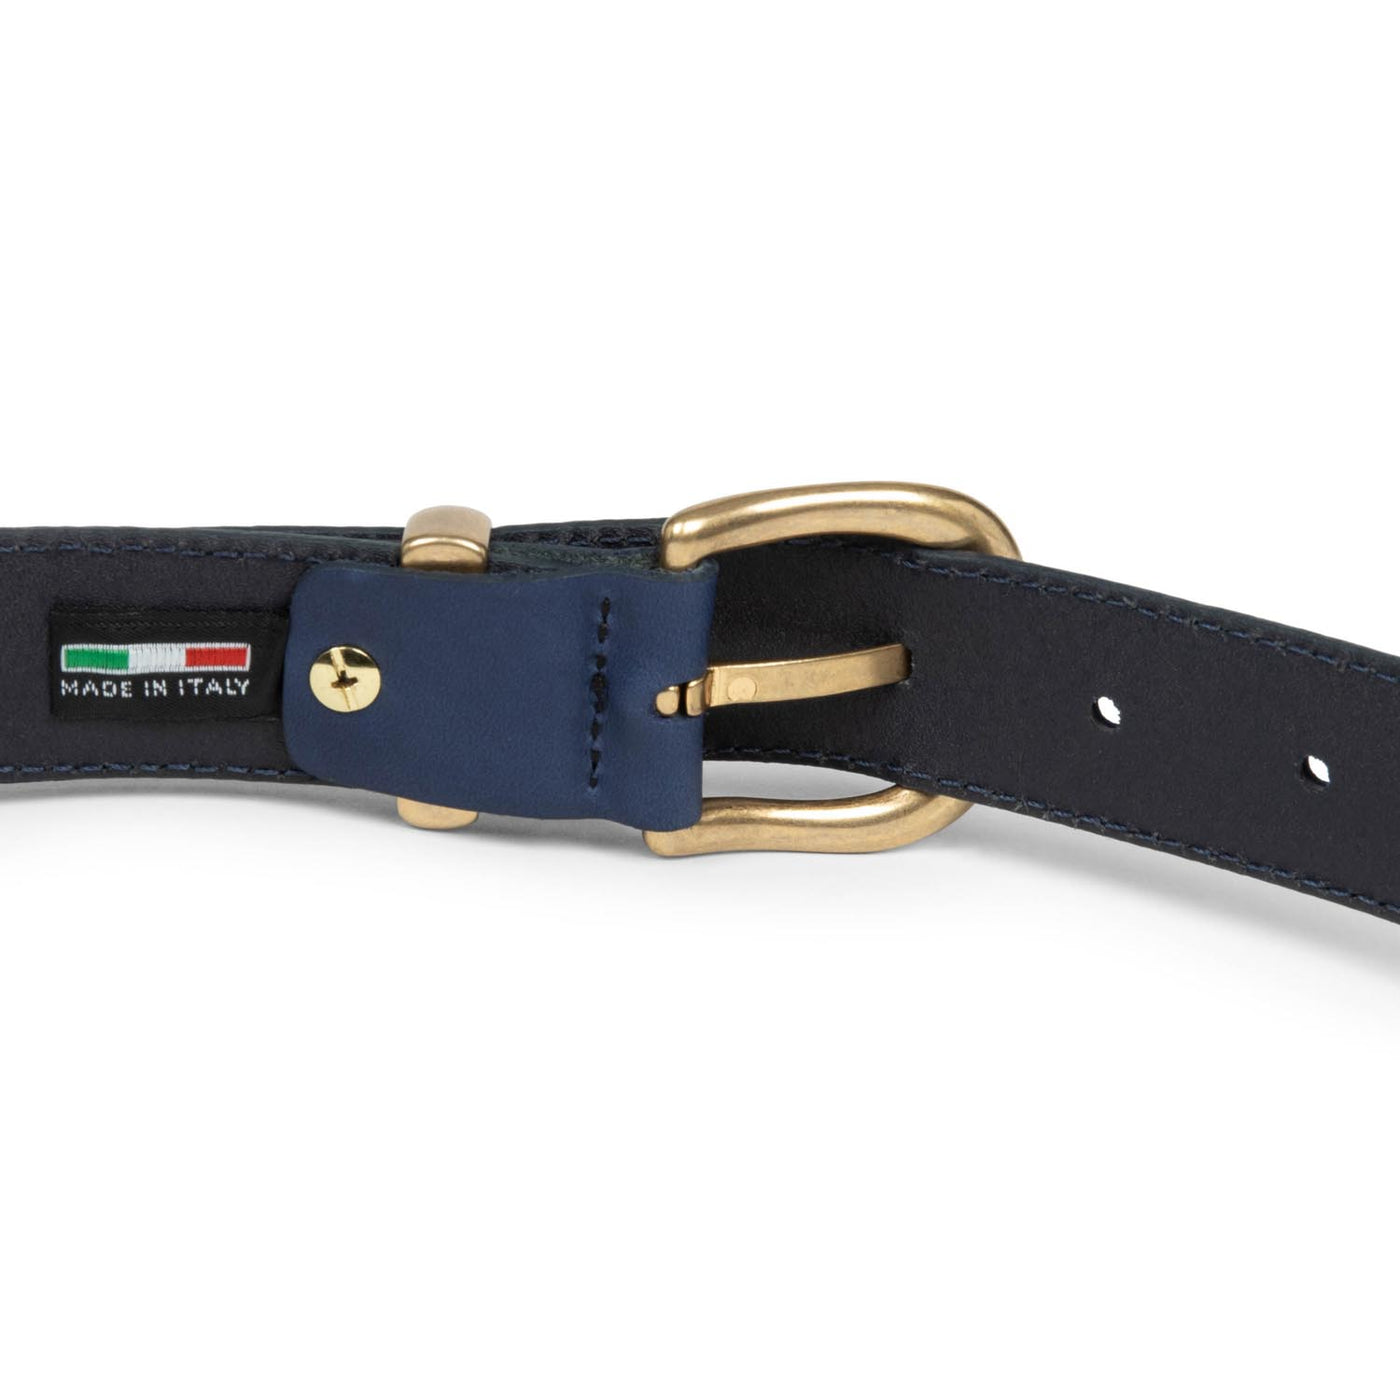 belt - ceinture cuir lisse femme #couleur_bleu-cendre